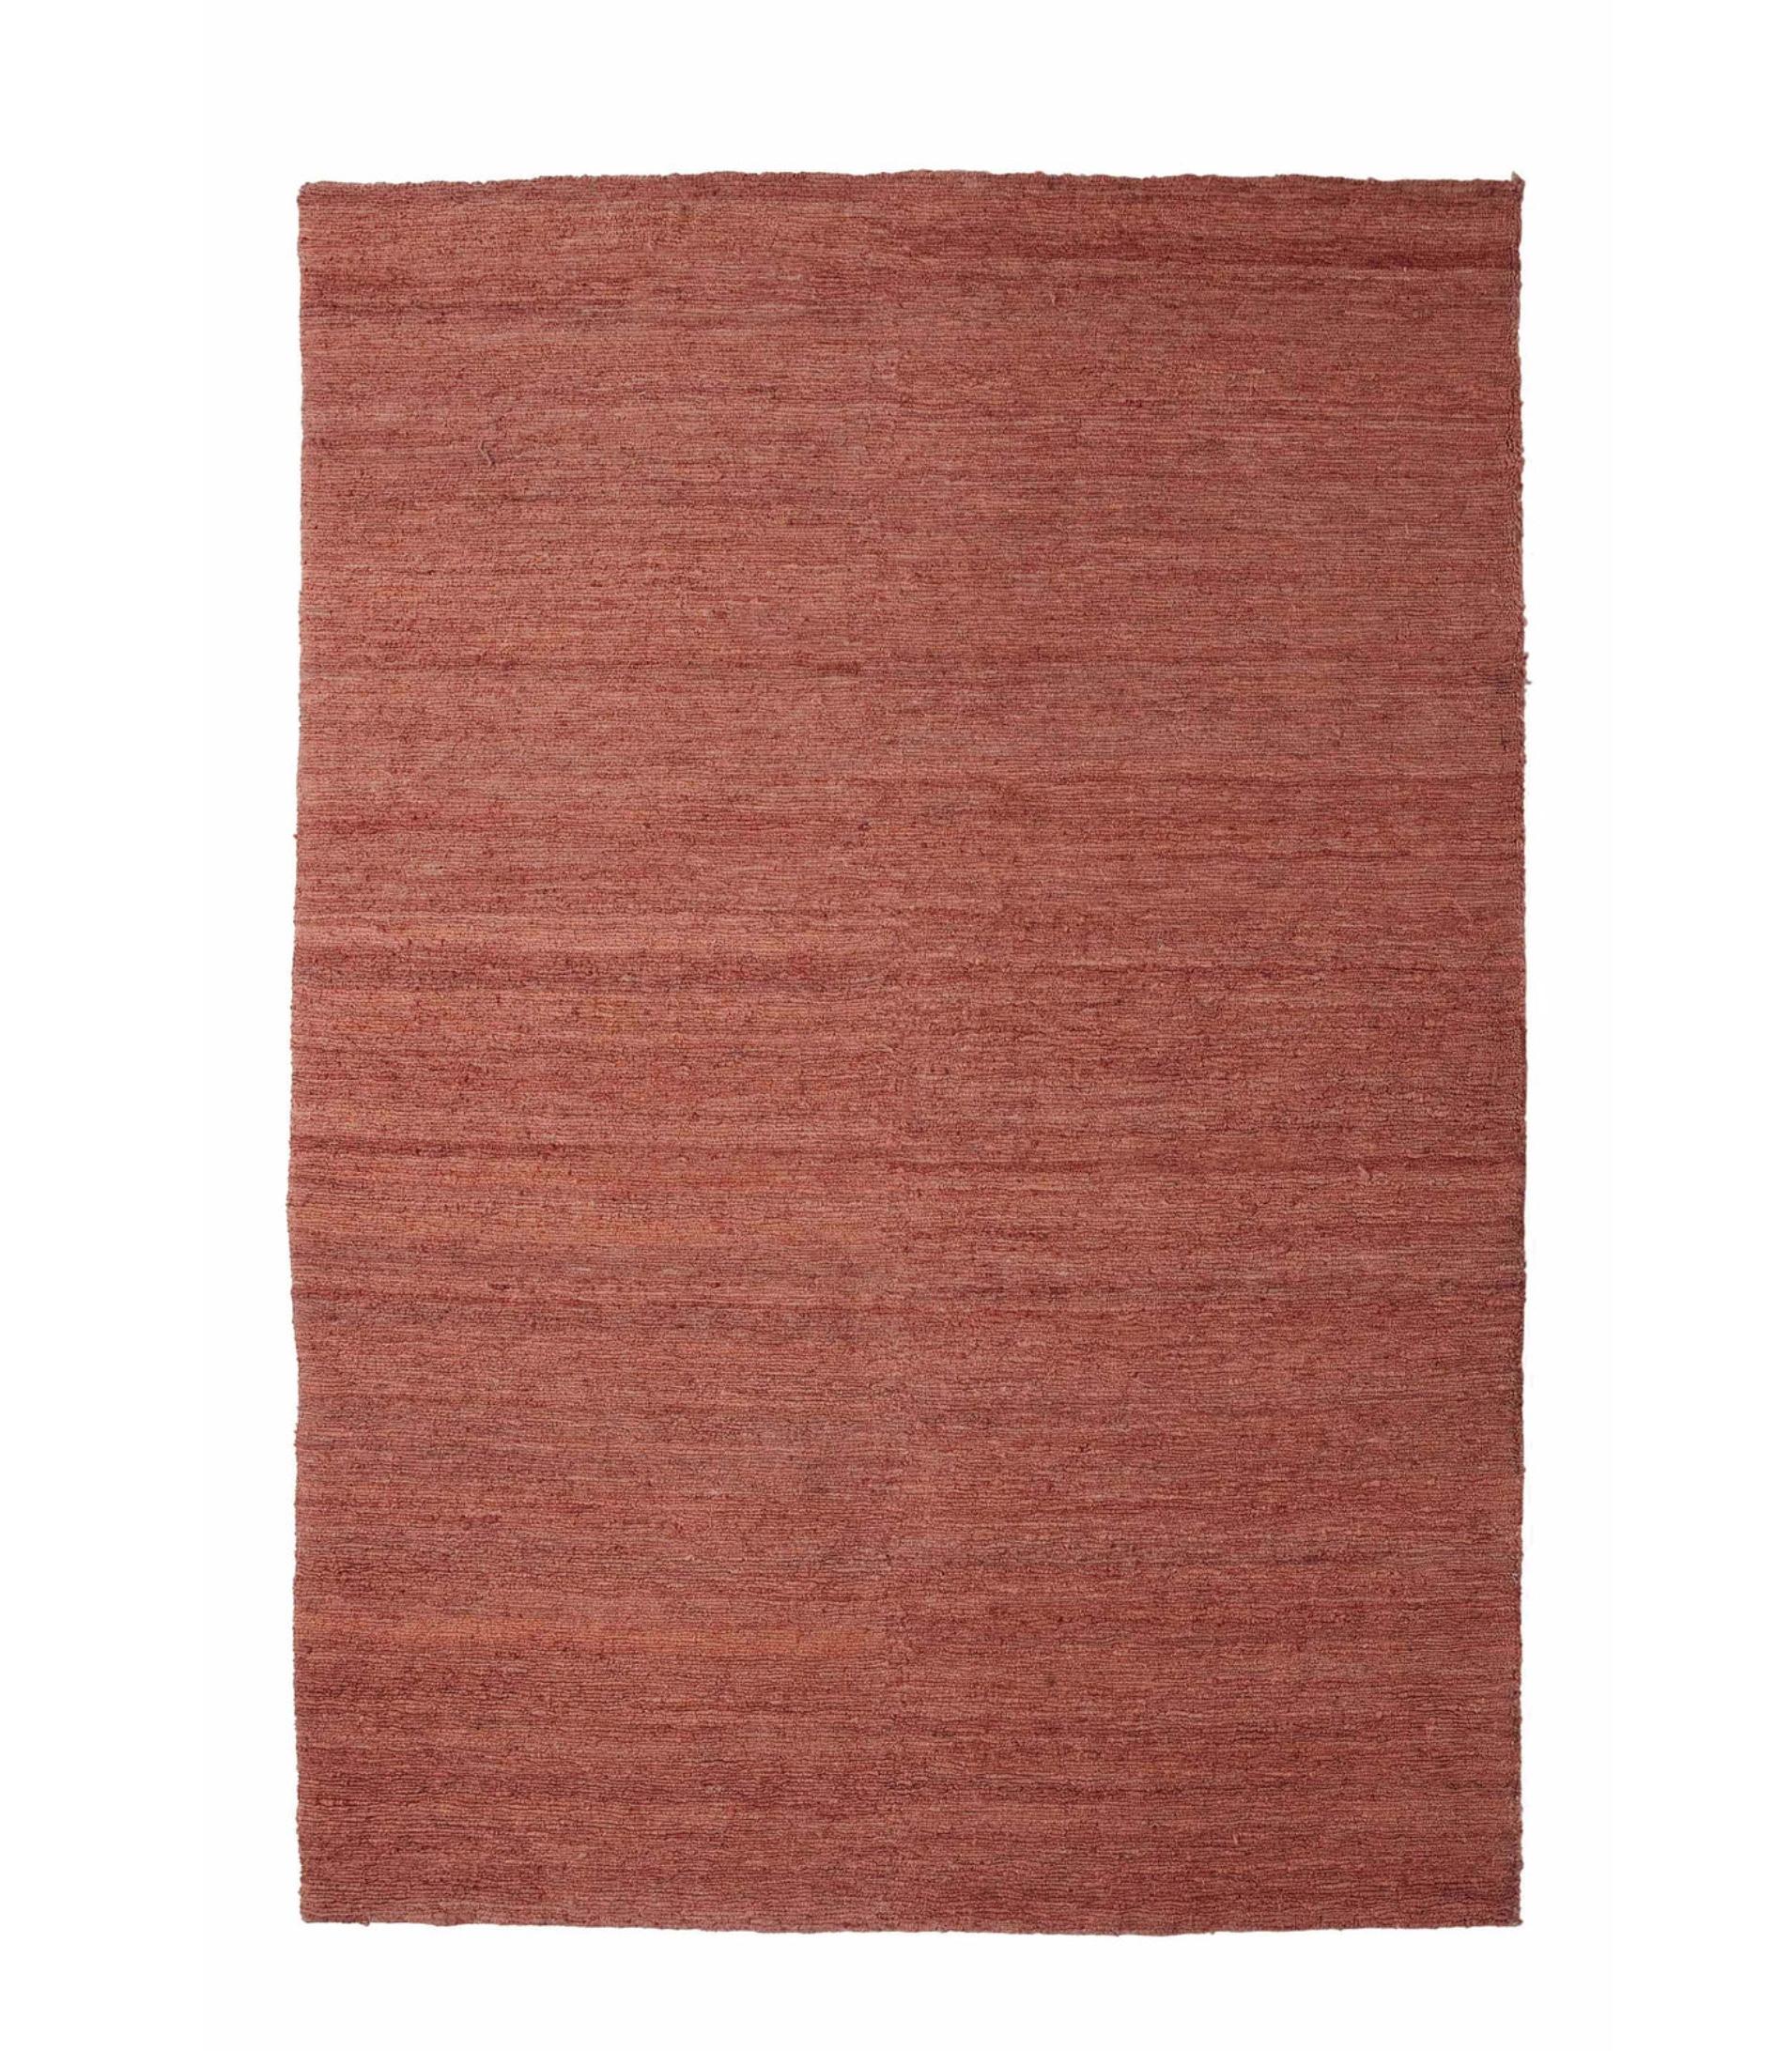 Nanimarquina 'Earth' Teppich aus handgesponnener Jute. Neue, aktuelle Produktion.

Dieser handgefertigte Juteteppich erinnert an die Texturen der Erde. Handgeknüpft mit engen Schlingen ist Earth ein sehr cooler, rustikaler Teppich. Das Modell